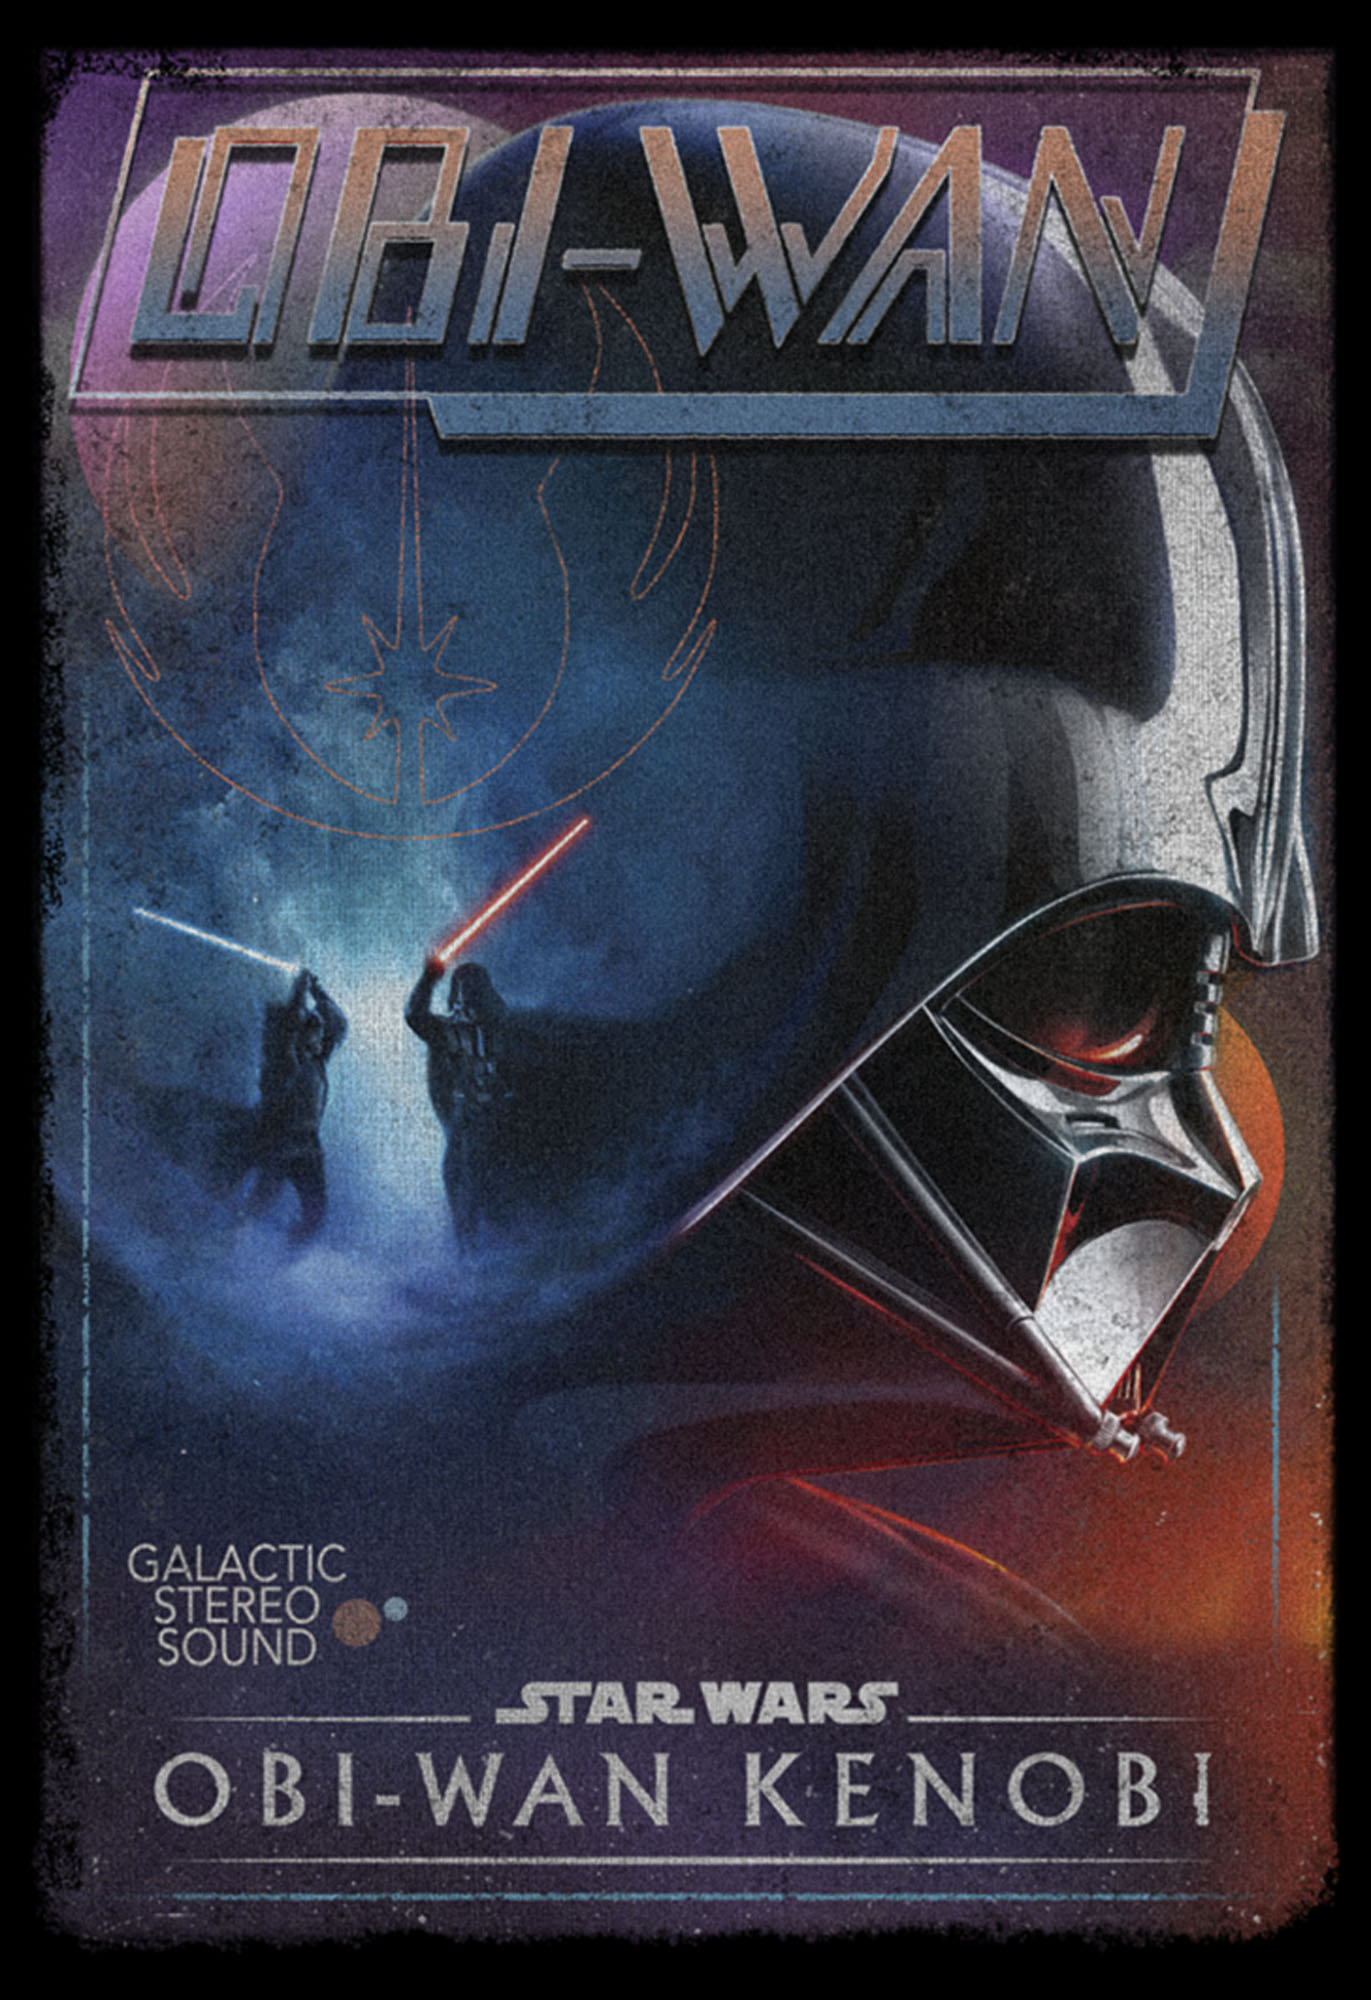 Star Wars: Obi-Wan Kenobi Men's Star Wars: Obi-Wan Kenobi Darth Vader vs Kenobi Vintage VHS Cassette  Graphic T-Shirt